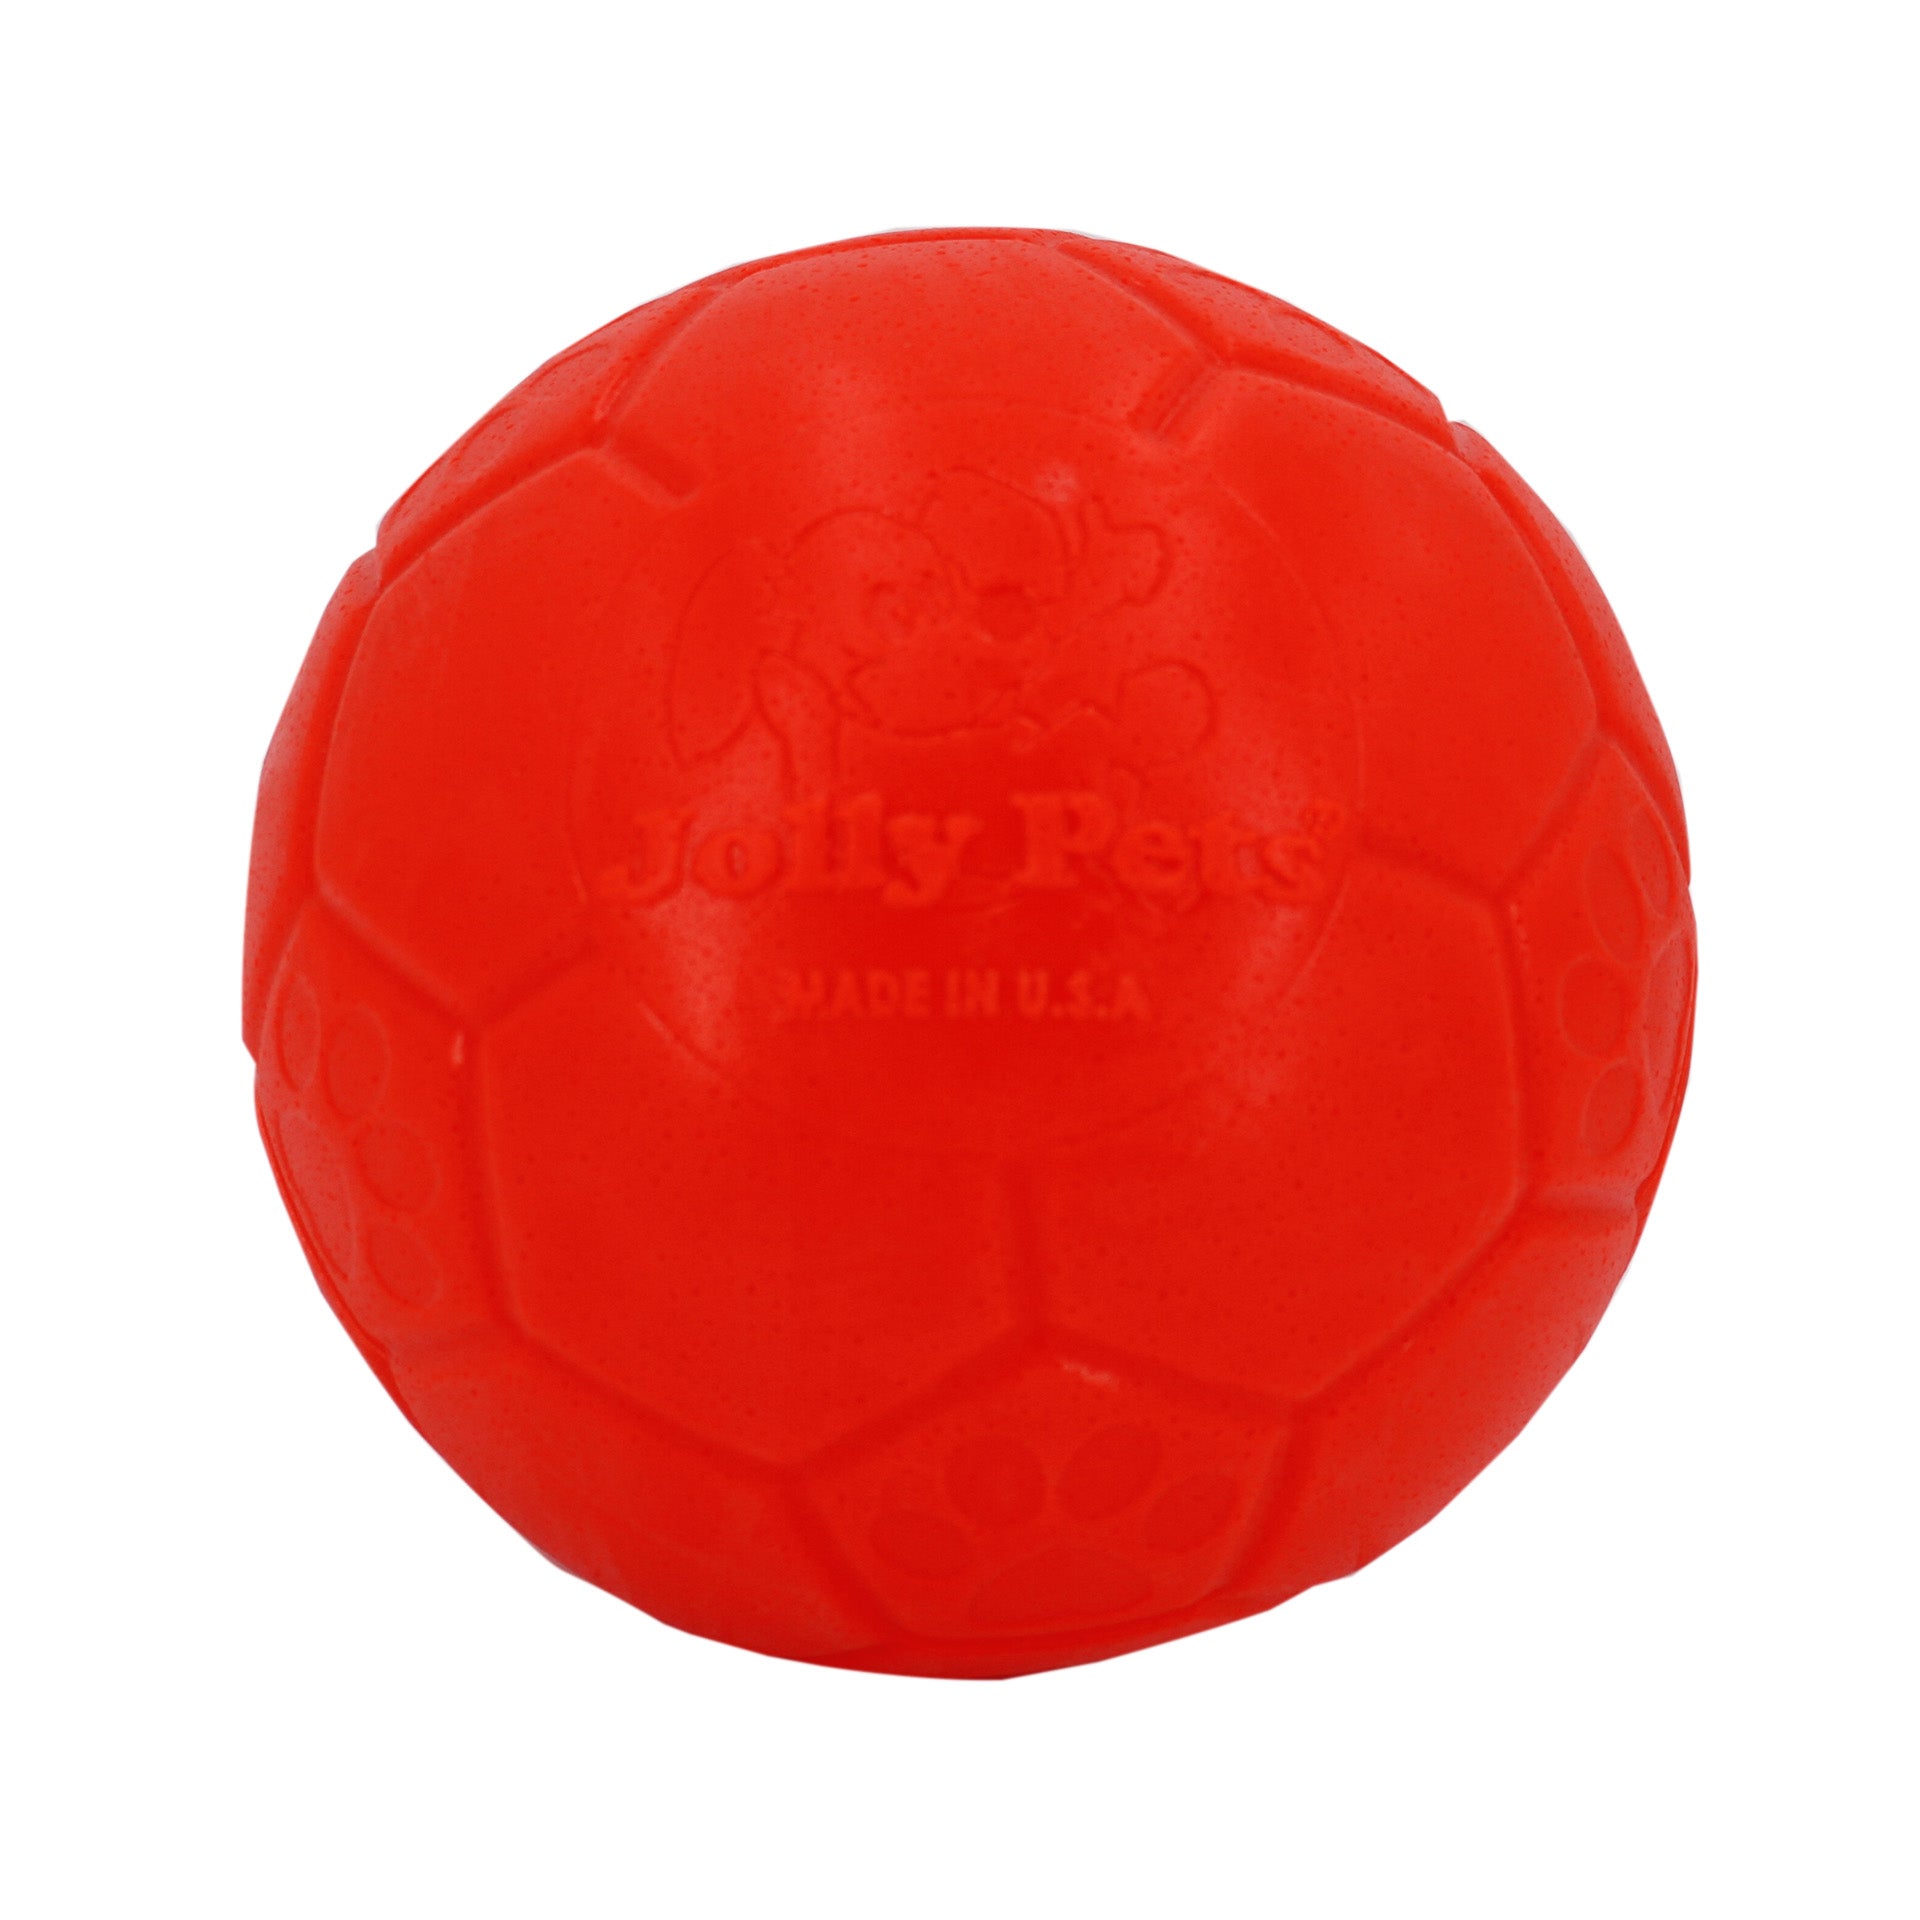 Jolly Soccer ball for dogs